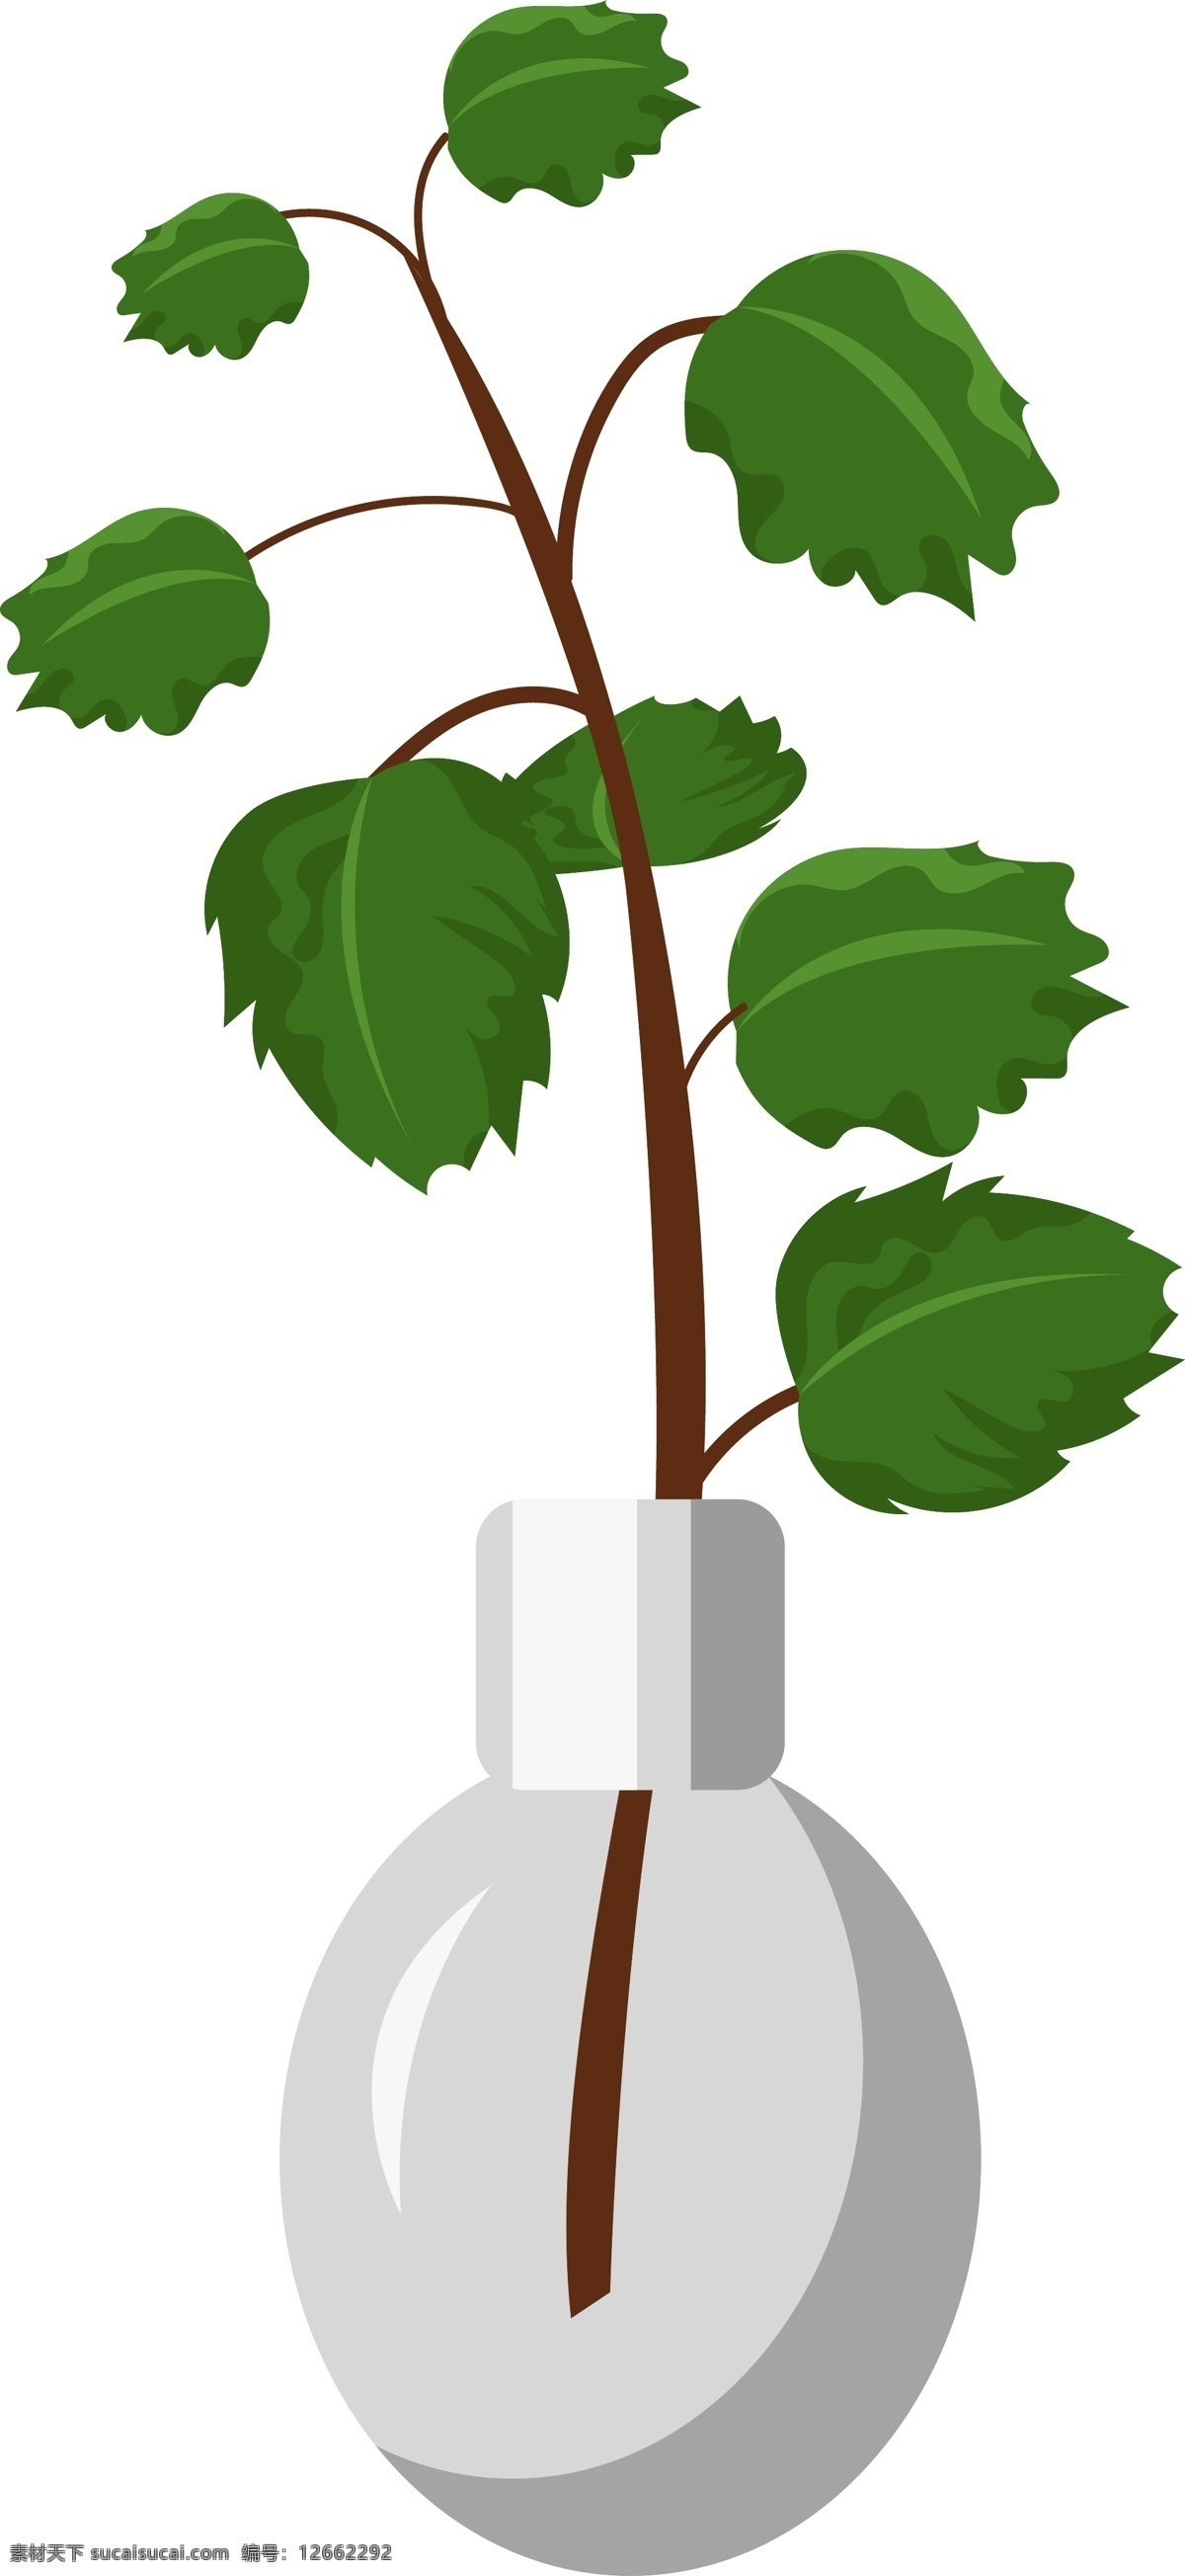 白色 花盆 绿叶 盆栽 插画 白色的花盆 绿色叶子 植物 绿叶枝条 绿植 卡通插画 透明的花盆 盆栽插画